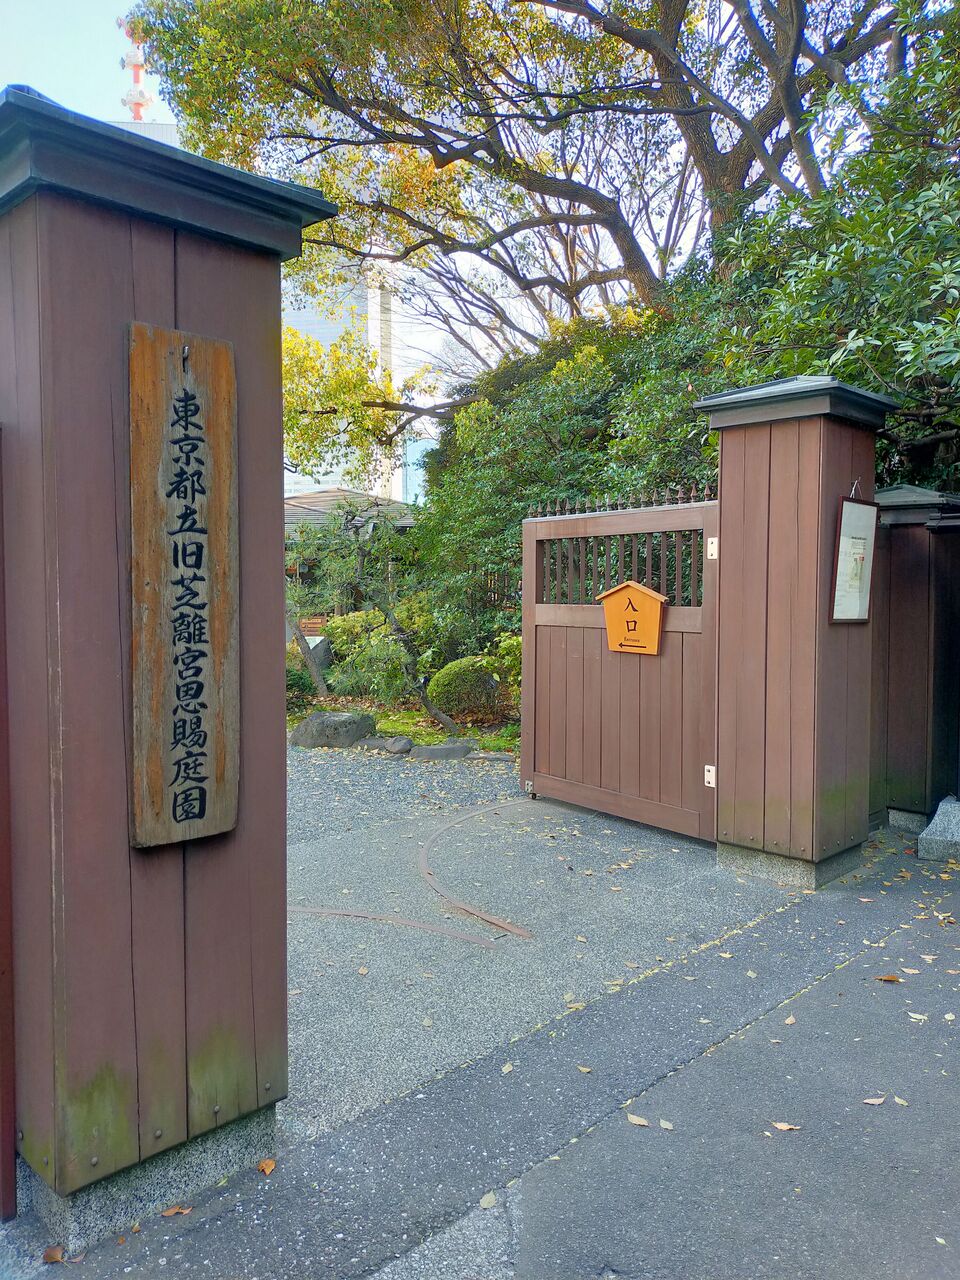 旧芝離宮恩賜庭園 二つの庭園の桜を楽しむ東京旅その6 アラフィフ主婦のディズニー年パス日記